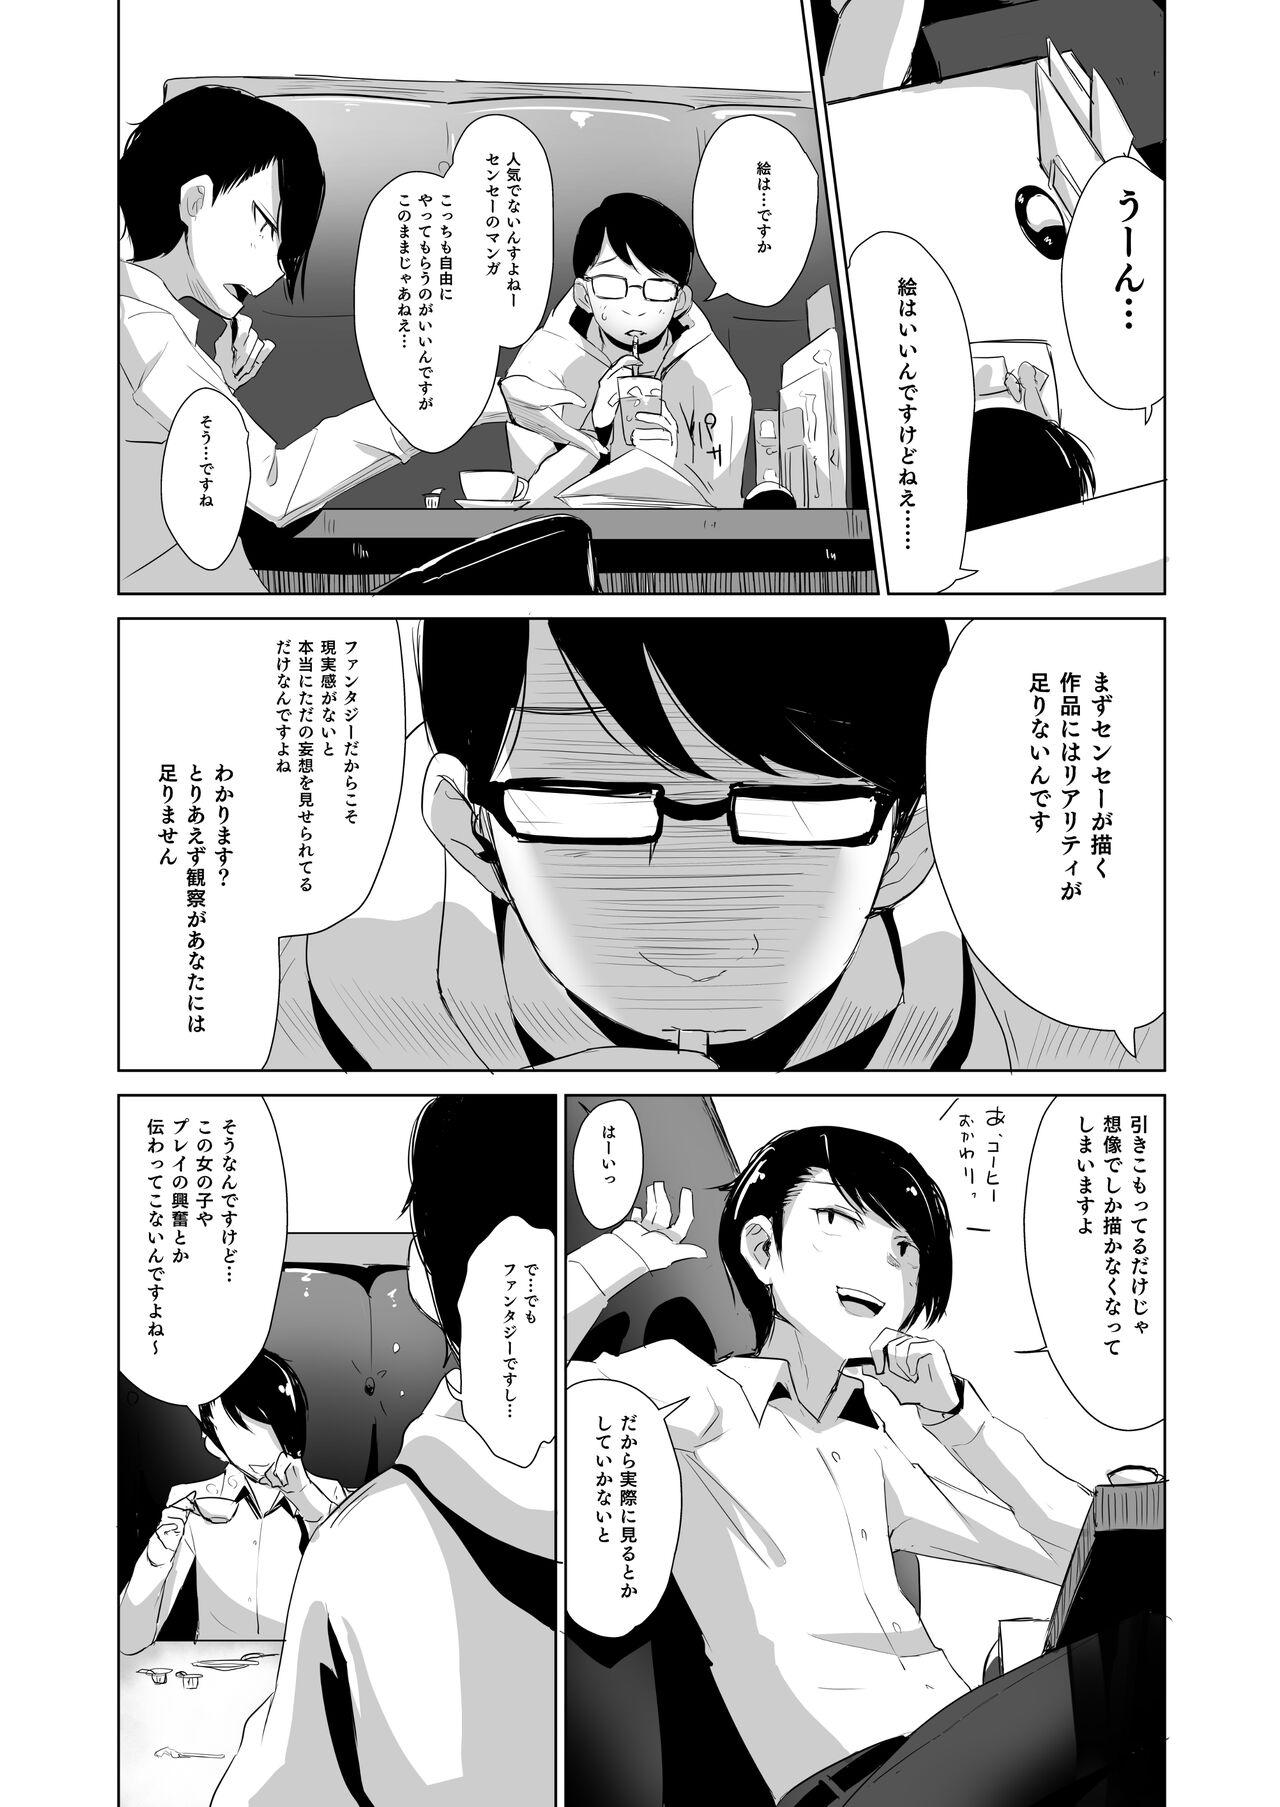 Rachirare Shoujo wa, Manga no Naka de __. Koharu Hen 2